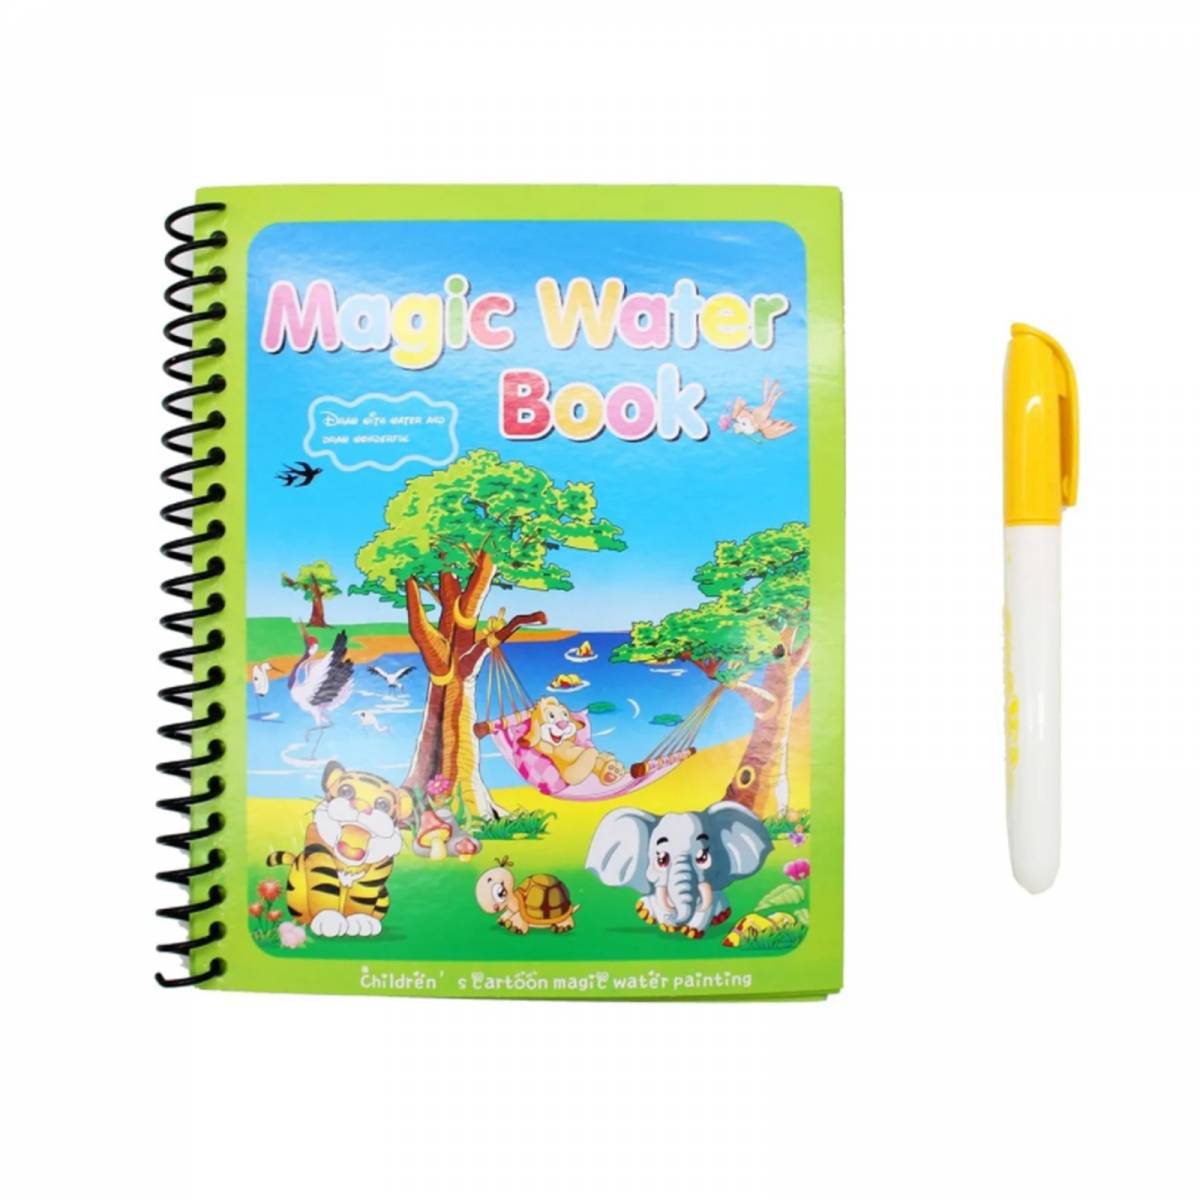 Magic water book #10